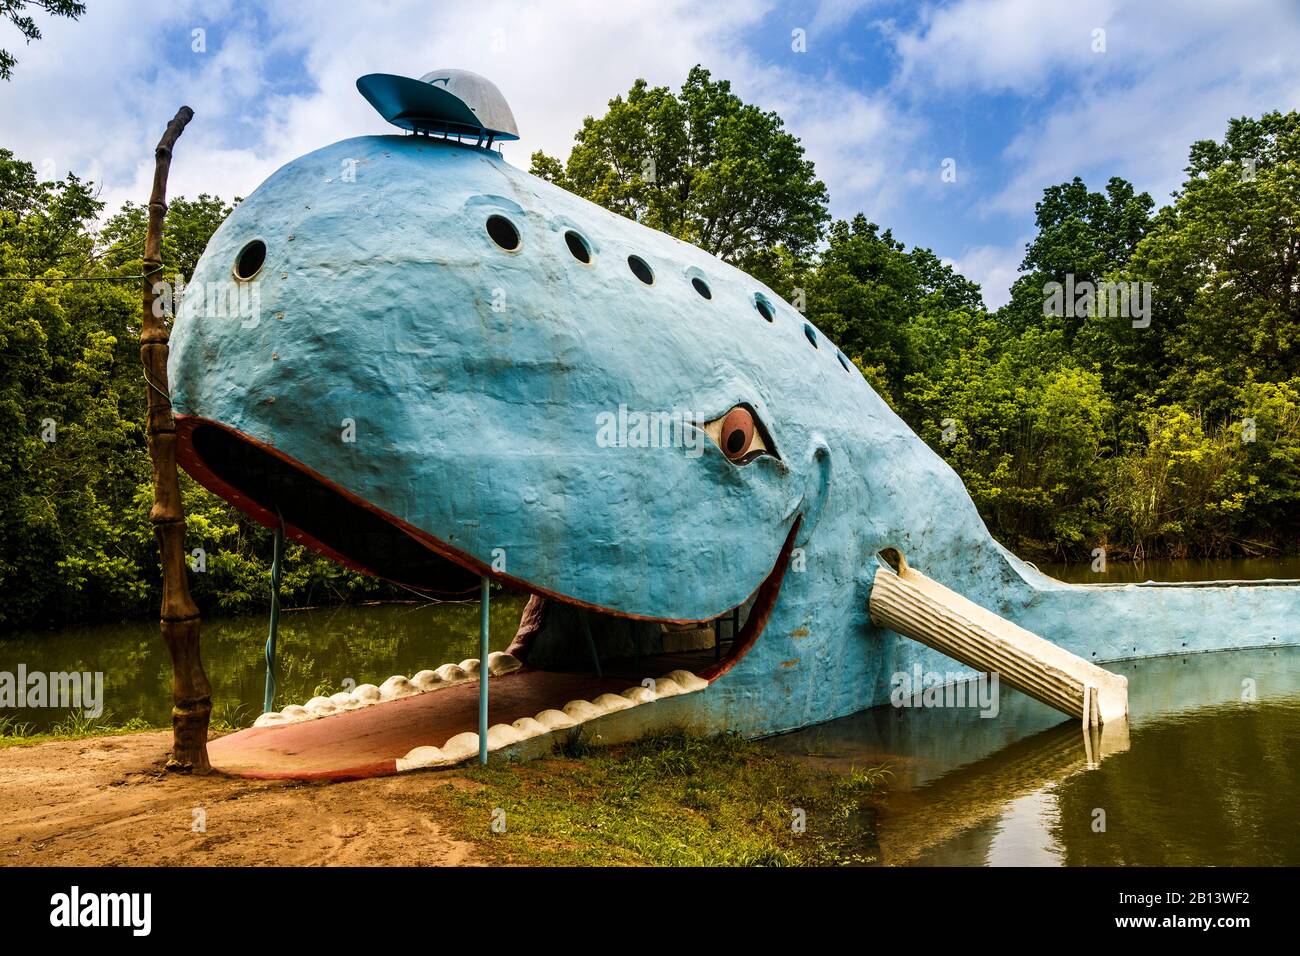 La Baleine Bleue, Catoosa, Route Historique 66, Oklahoma, La Baleine Bleue, Catoosa, Route Historique 66, Oklahoma Banque D'Images